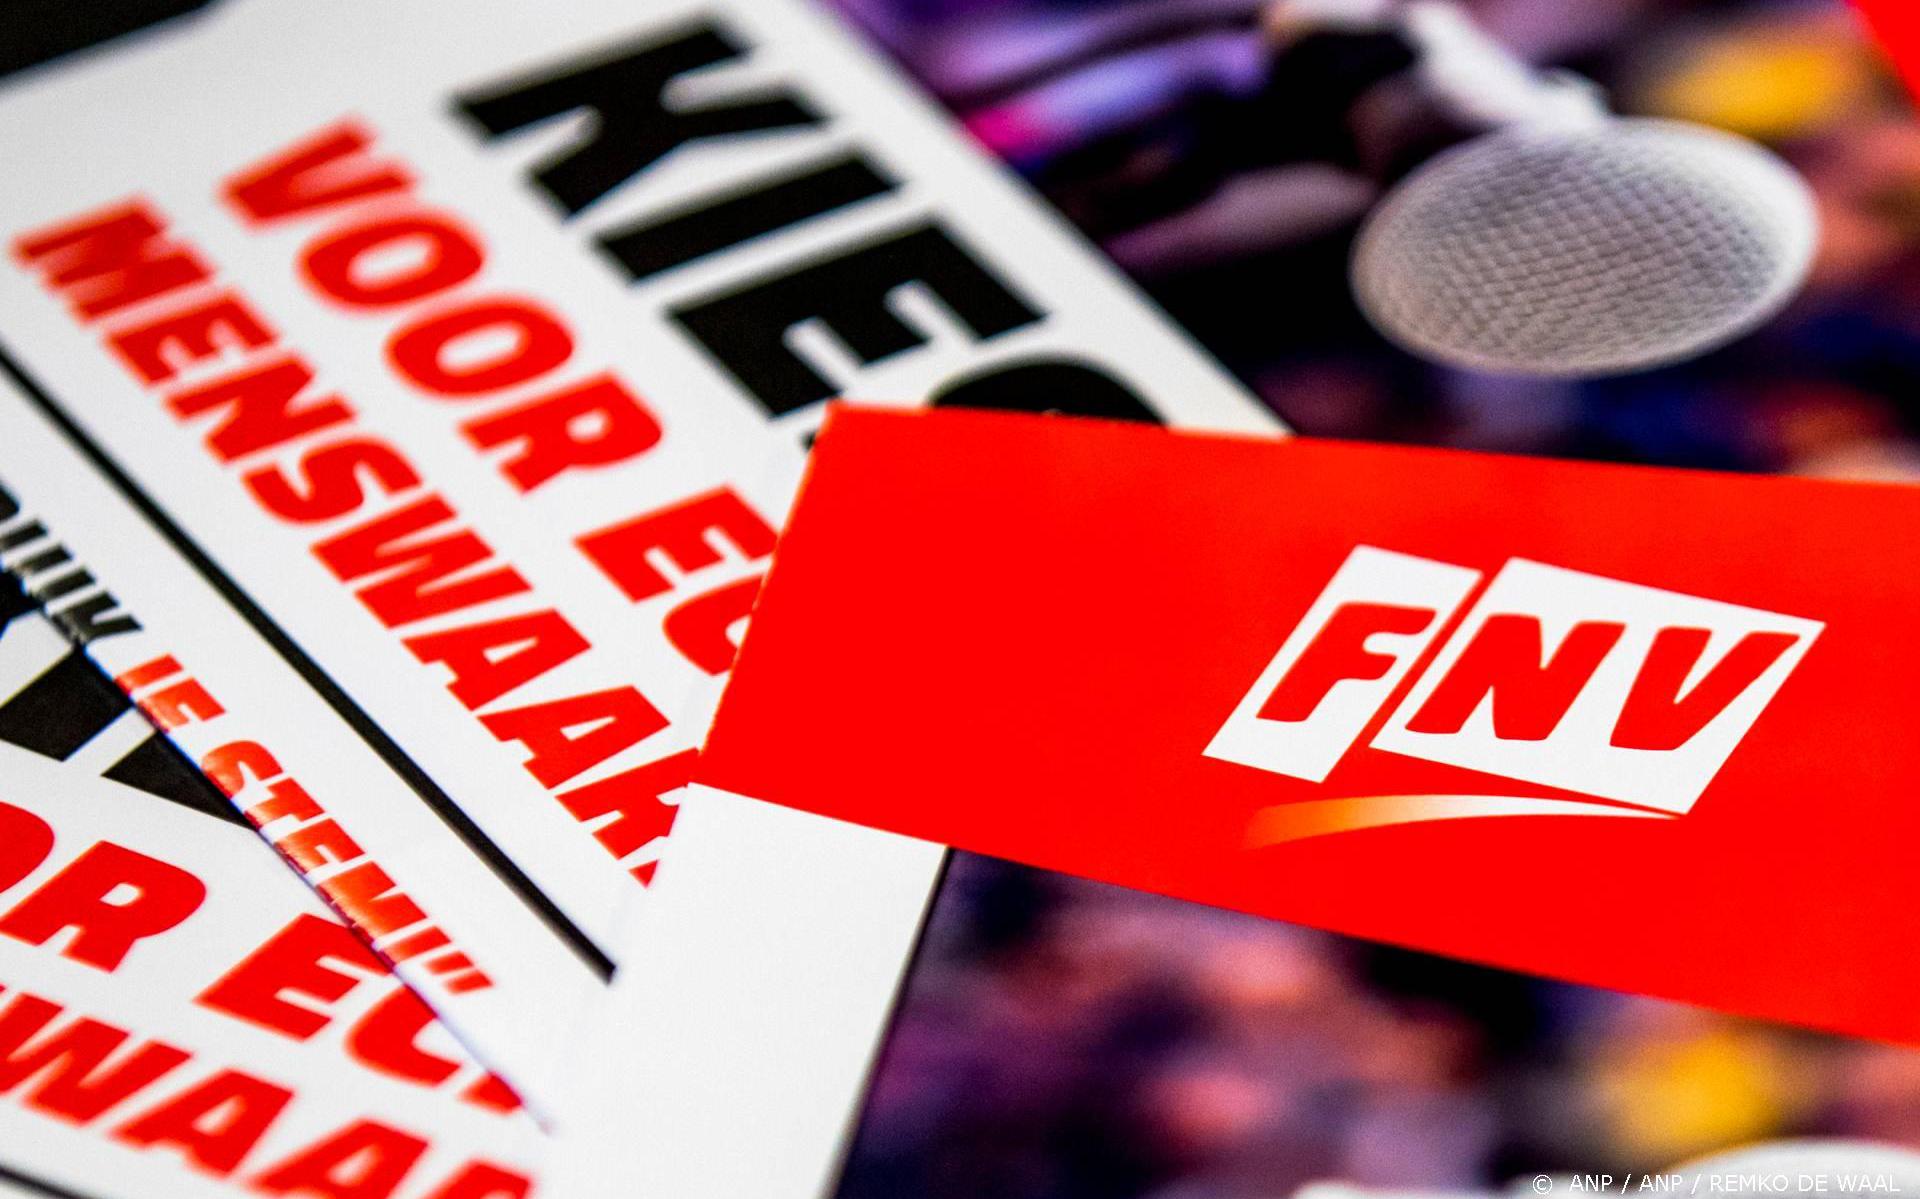 FNV: cao-eindbod van publieke omroepen onvoldoende